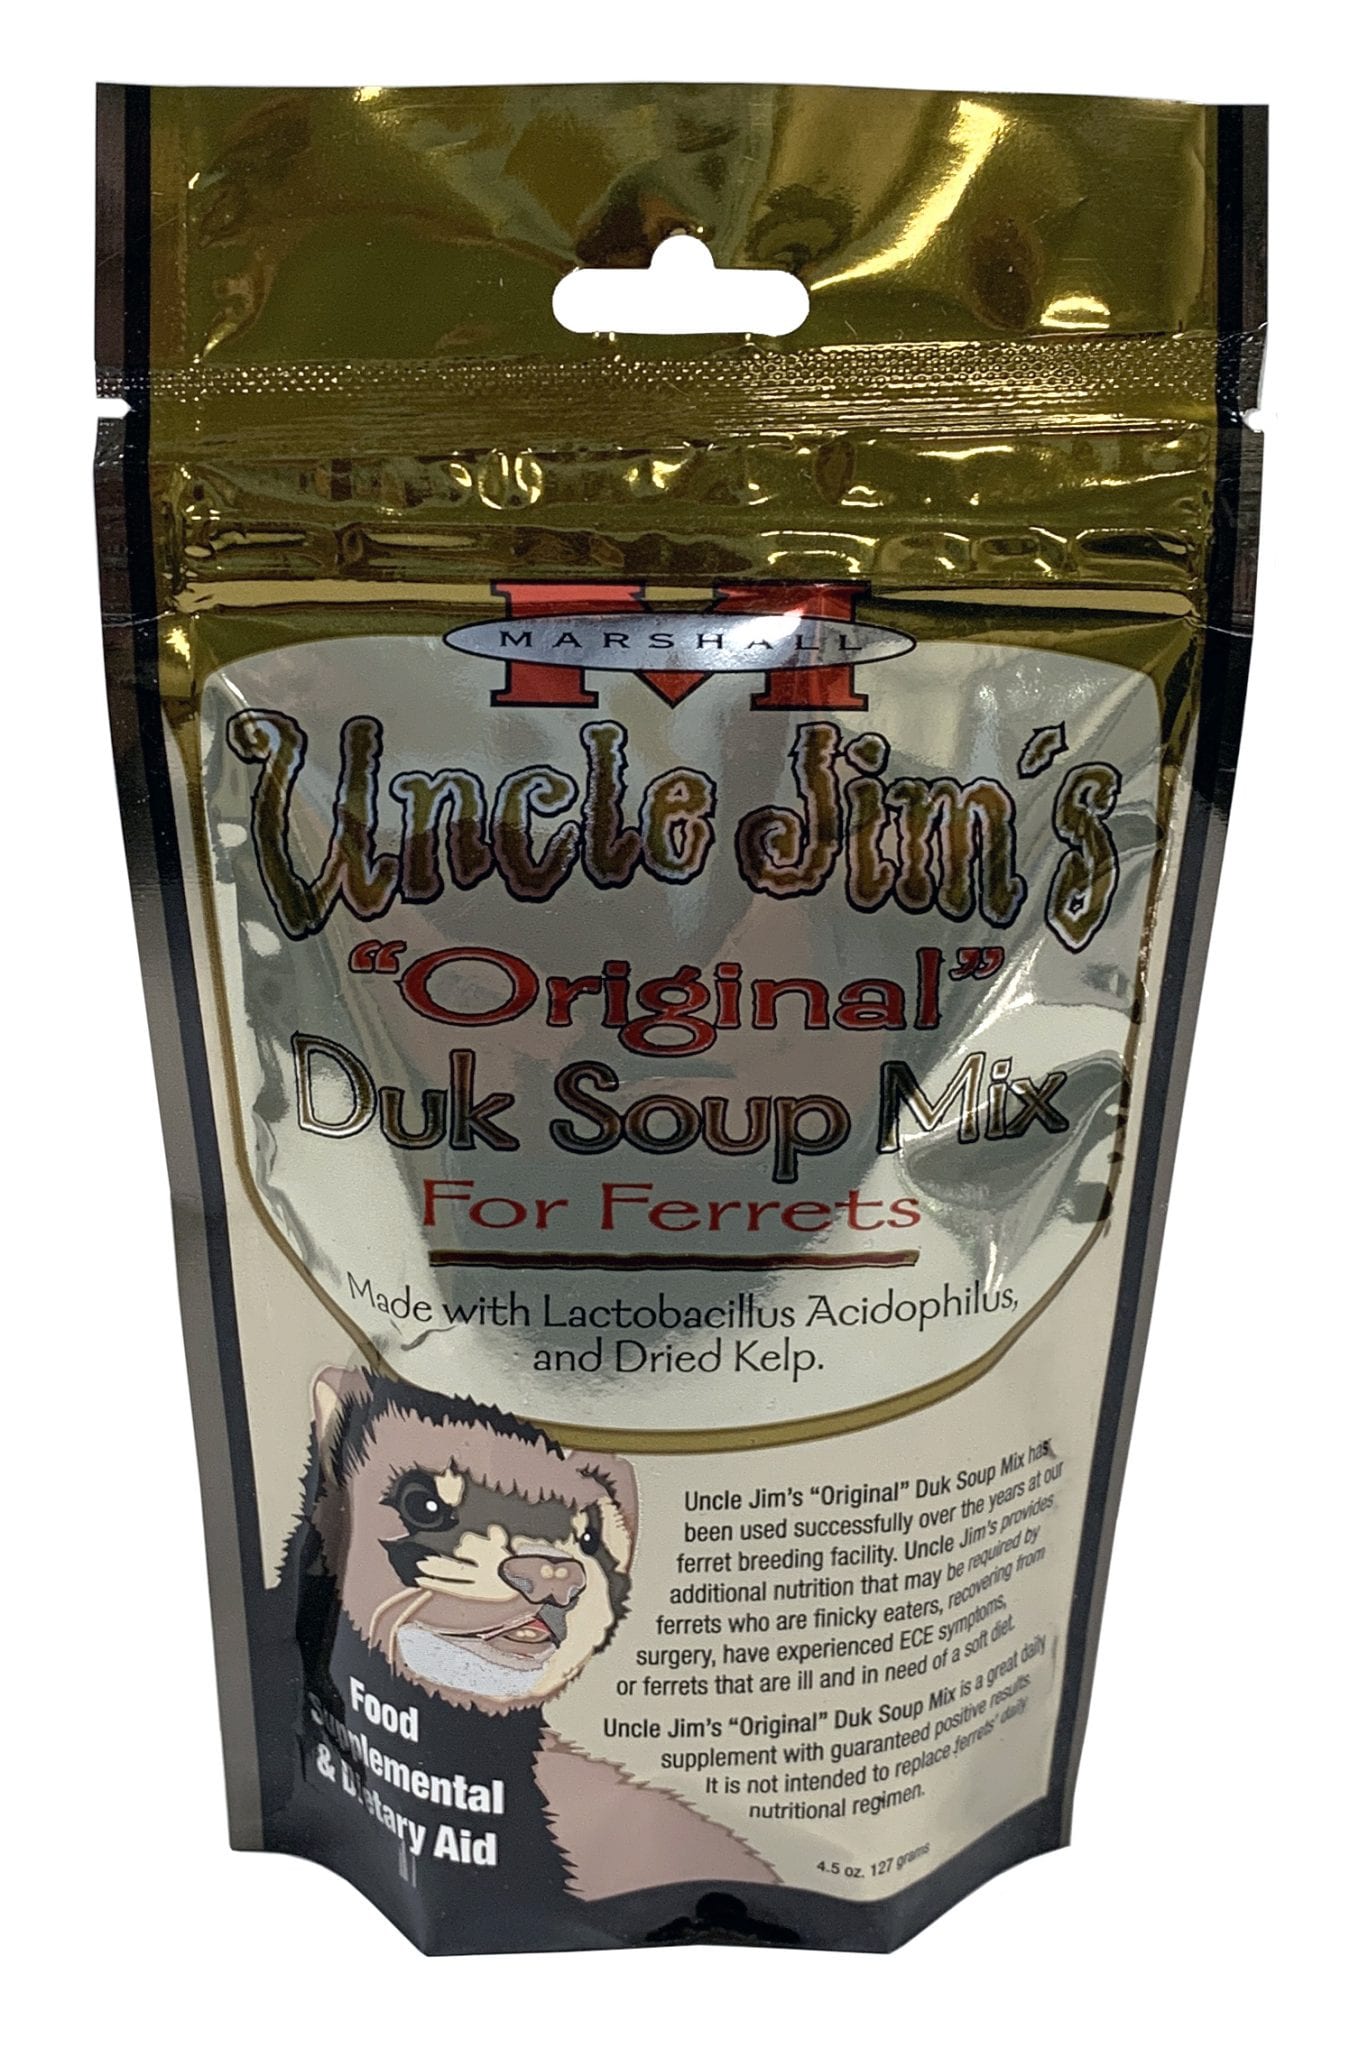 Uncle Jim's "Original" Duk Soup Mix for Ferrets